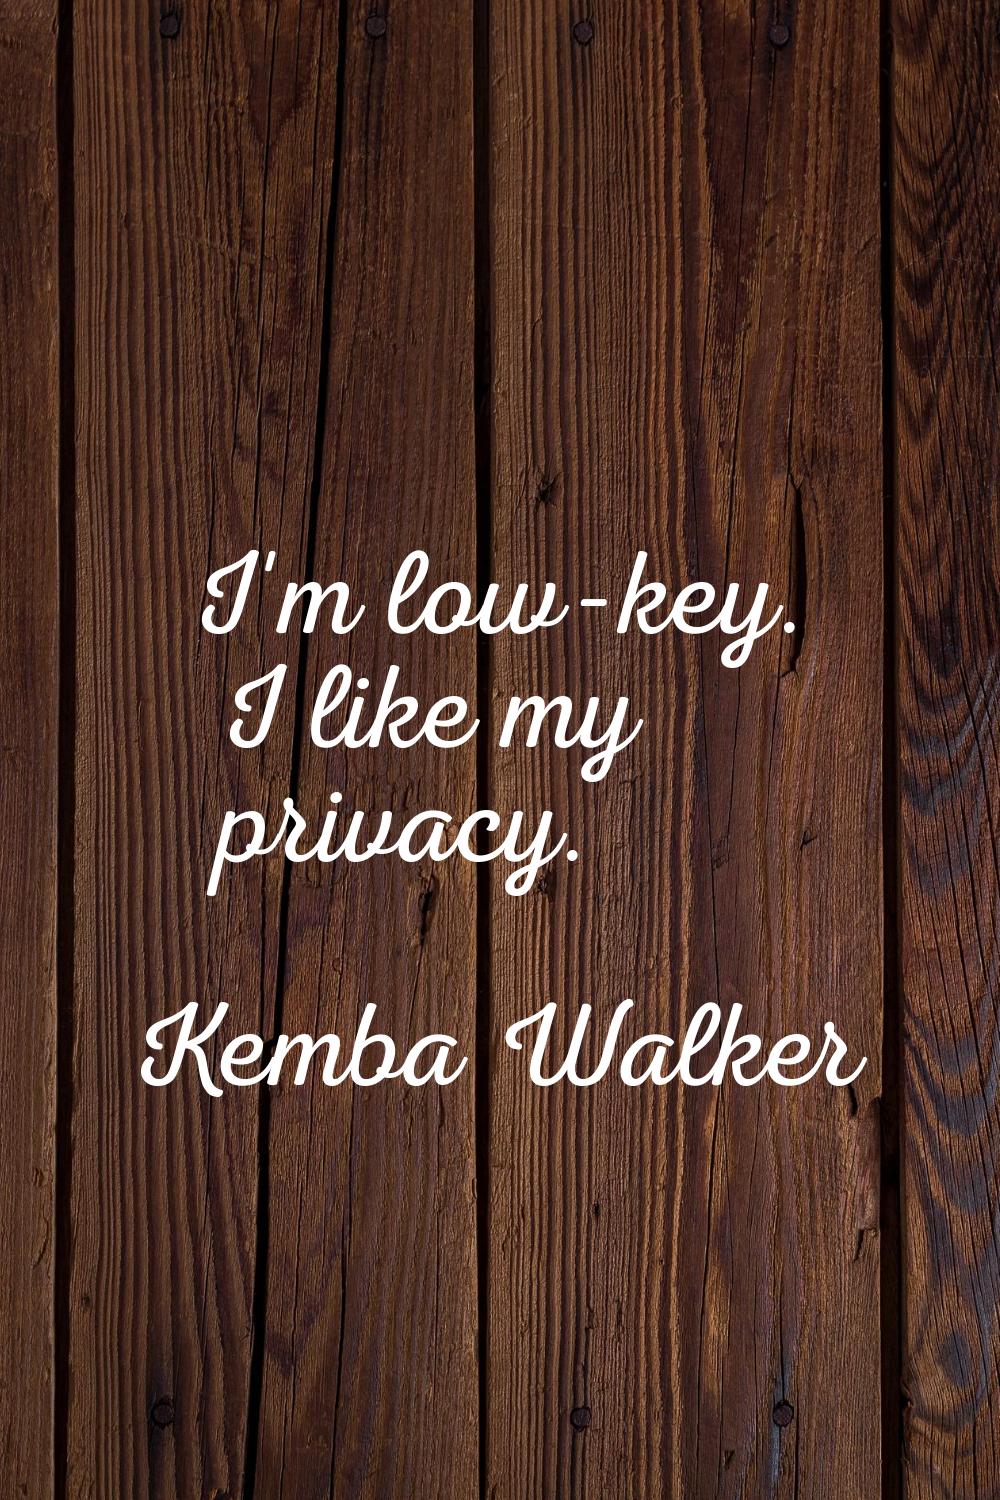 I'm low-key. I like my privacy.